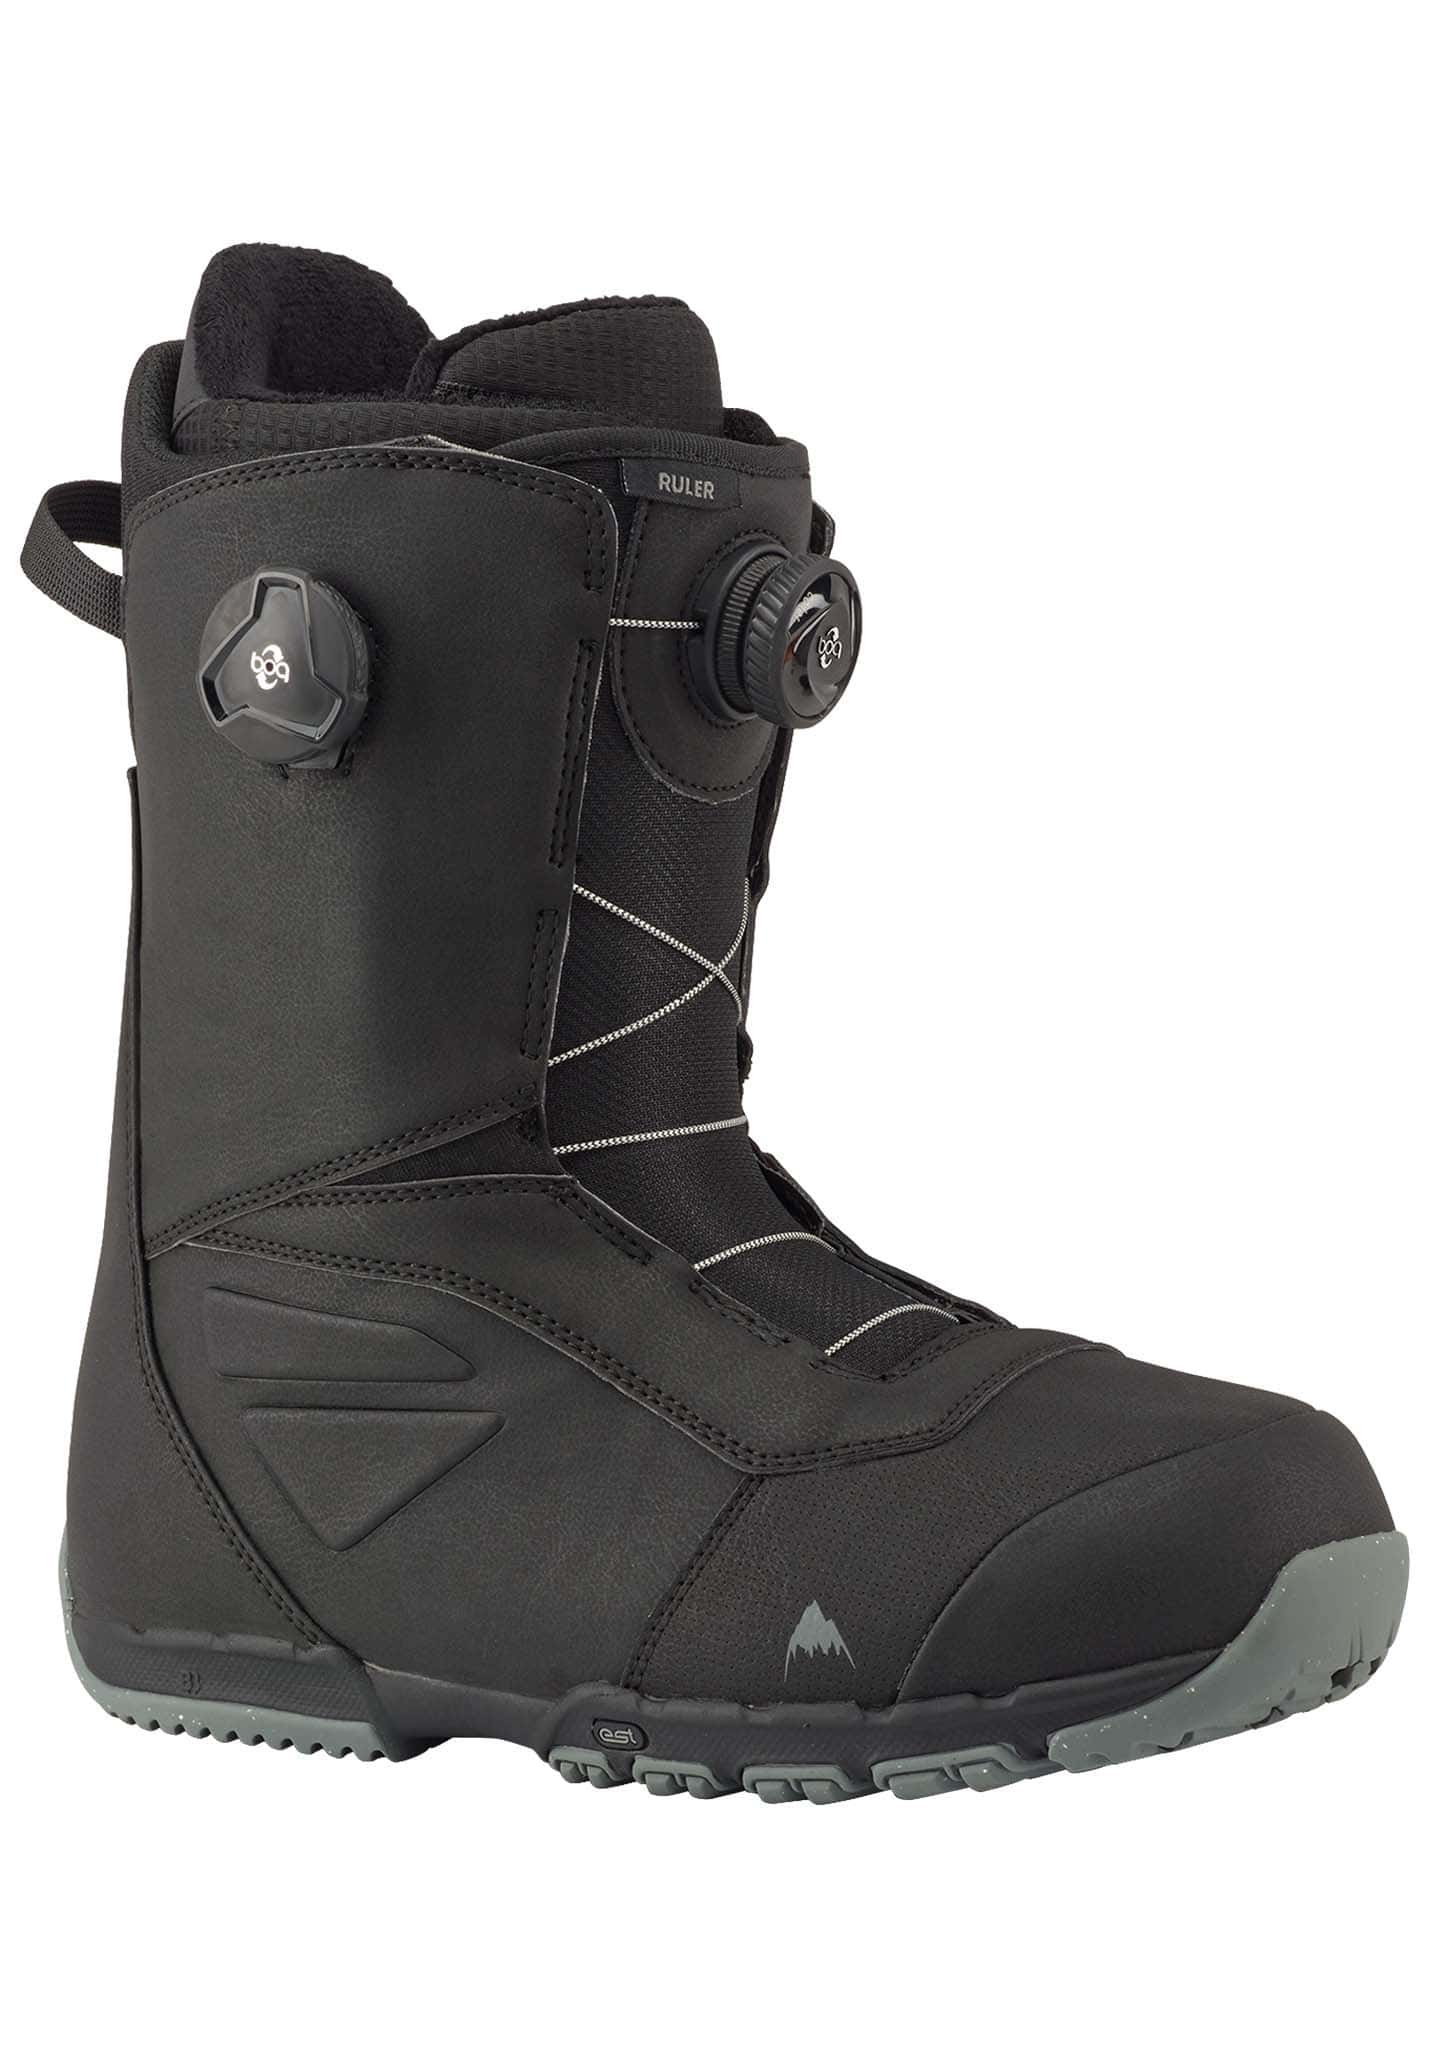 Burton Ruler Boa Snowboard Boots black 48